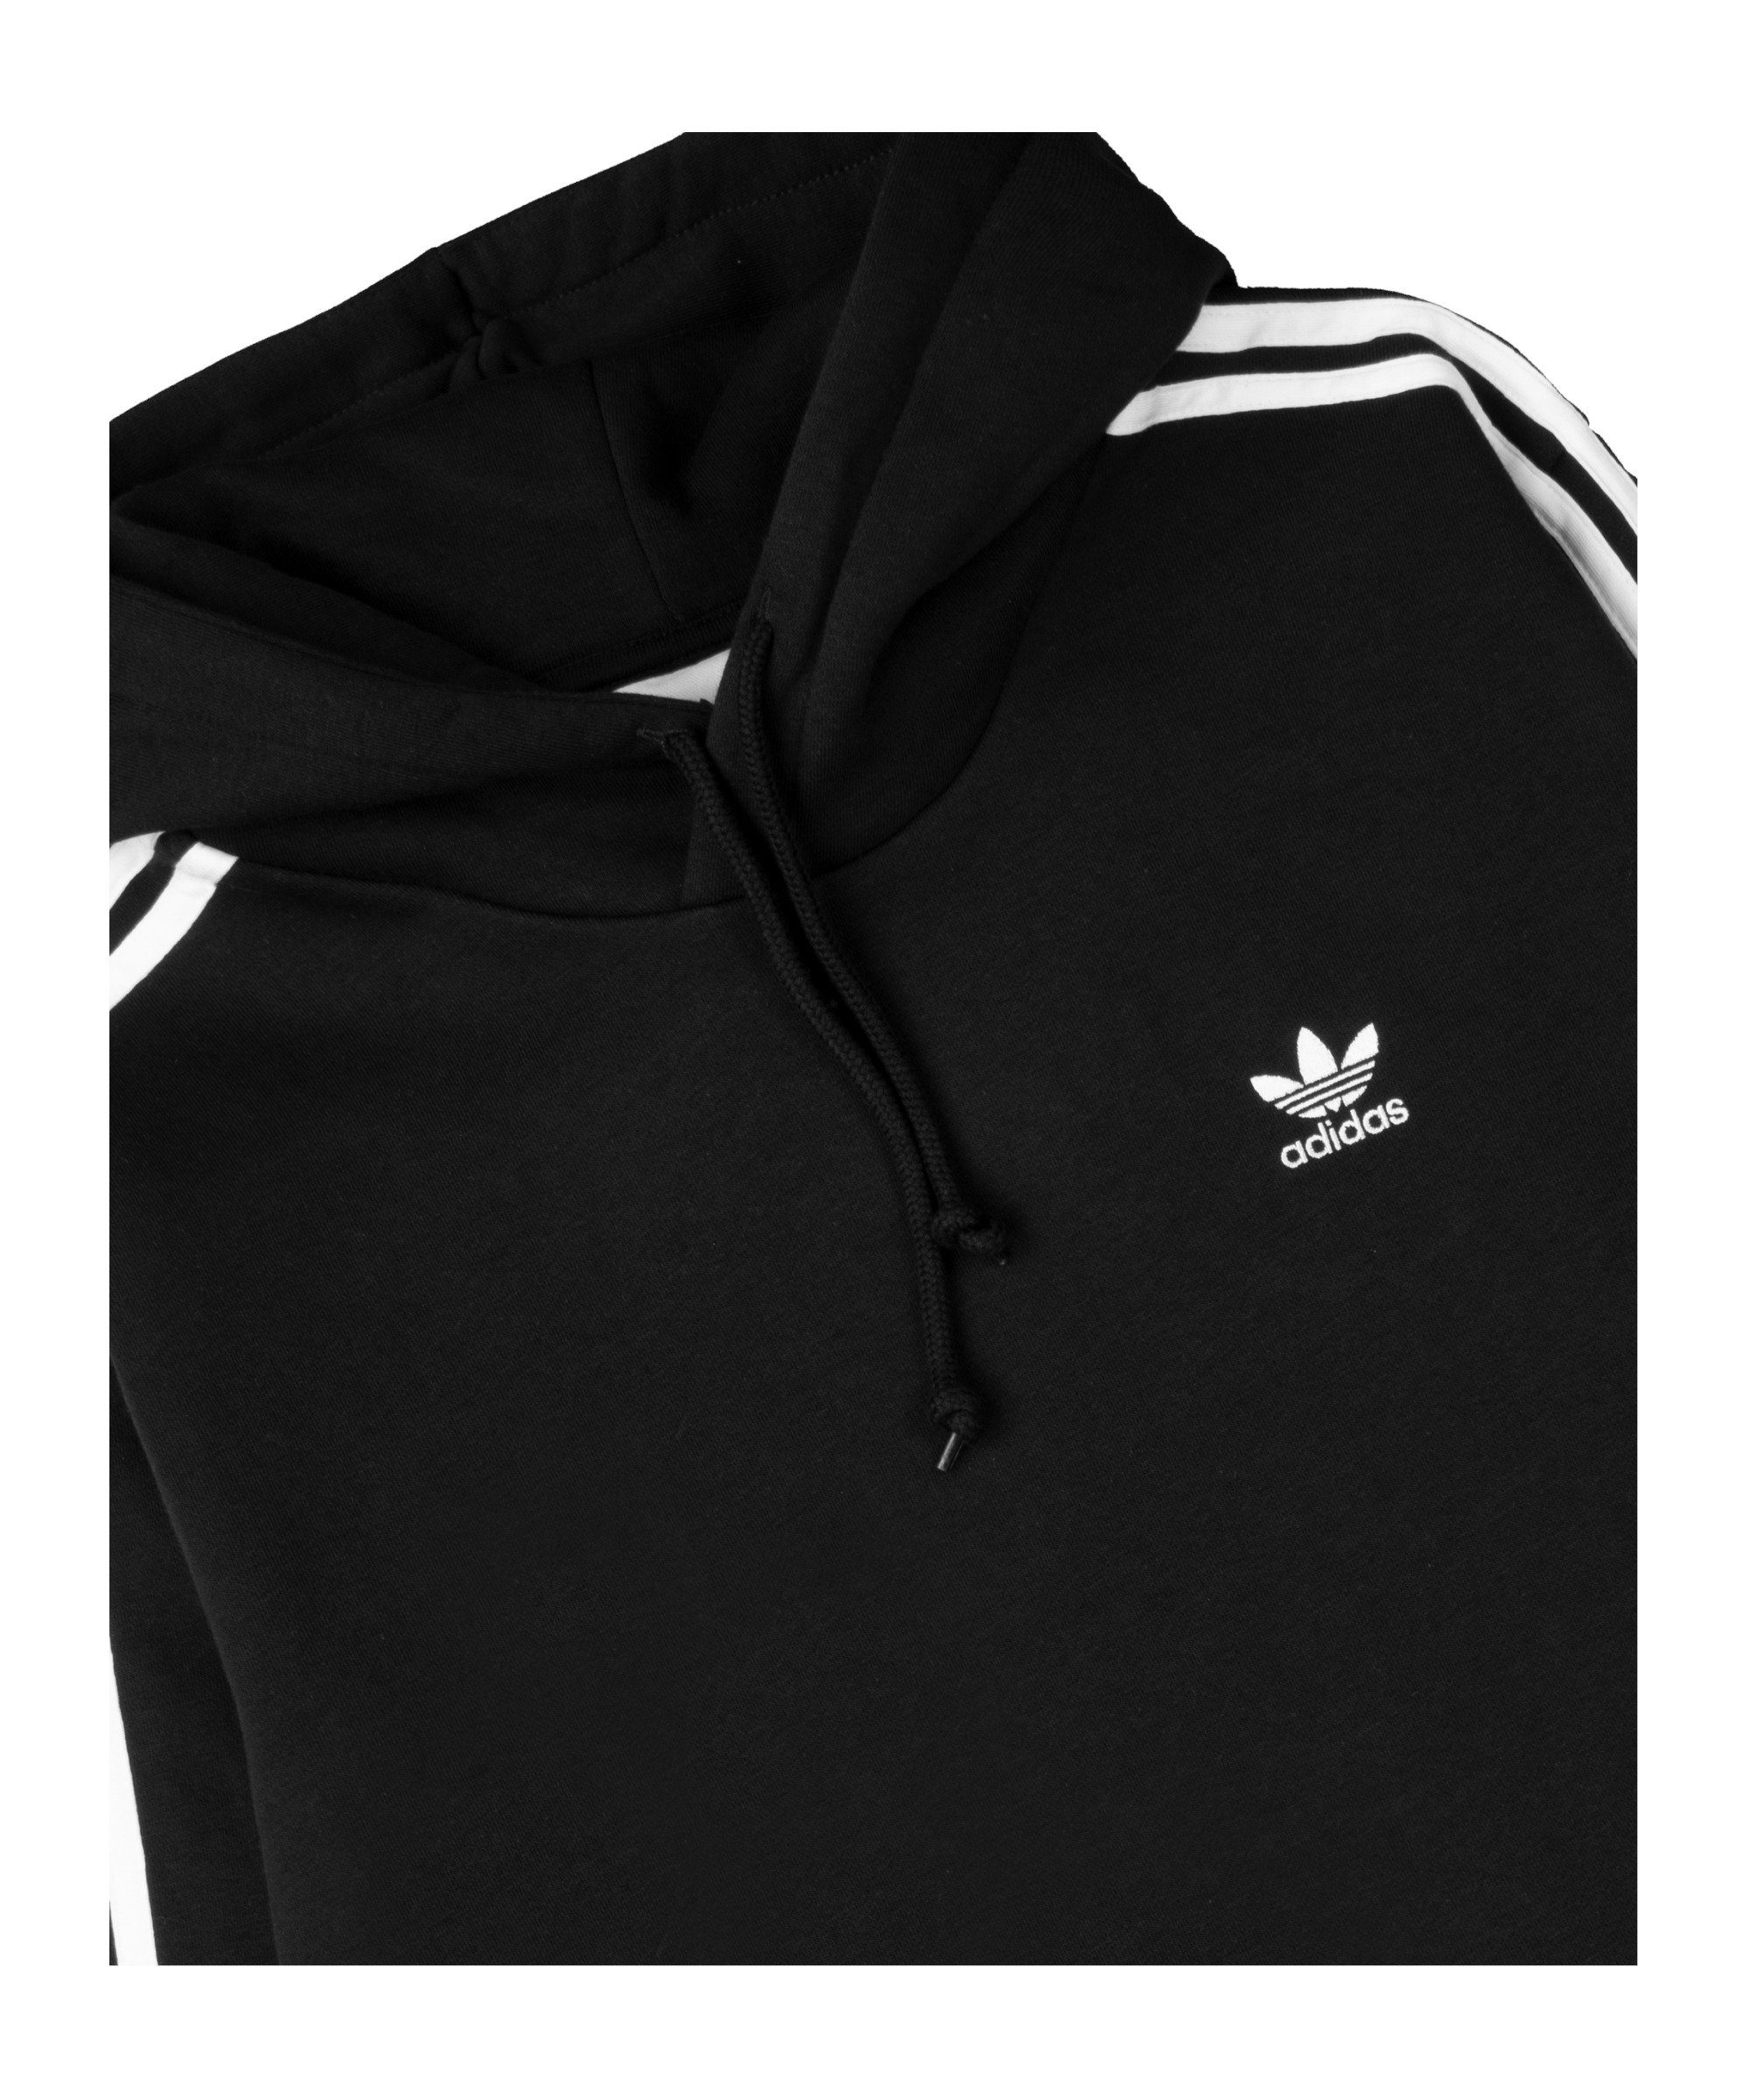 3S schwarz adidas Sweatshirt Originals Hoody